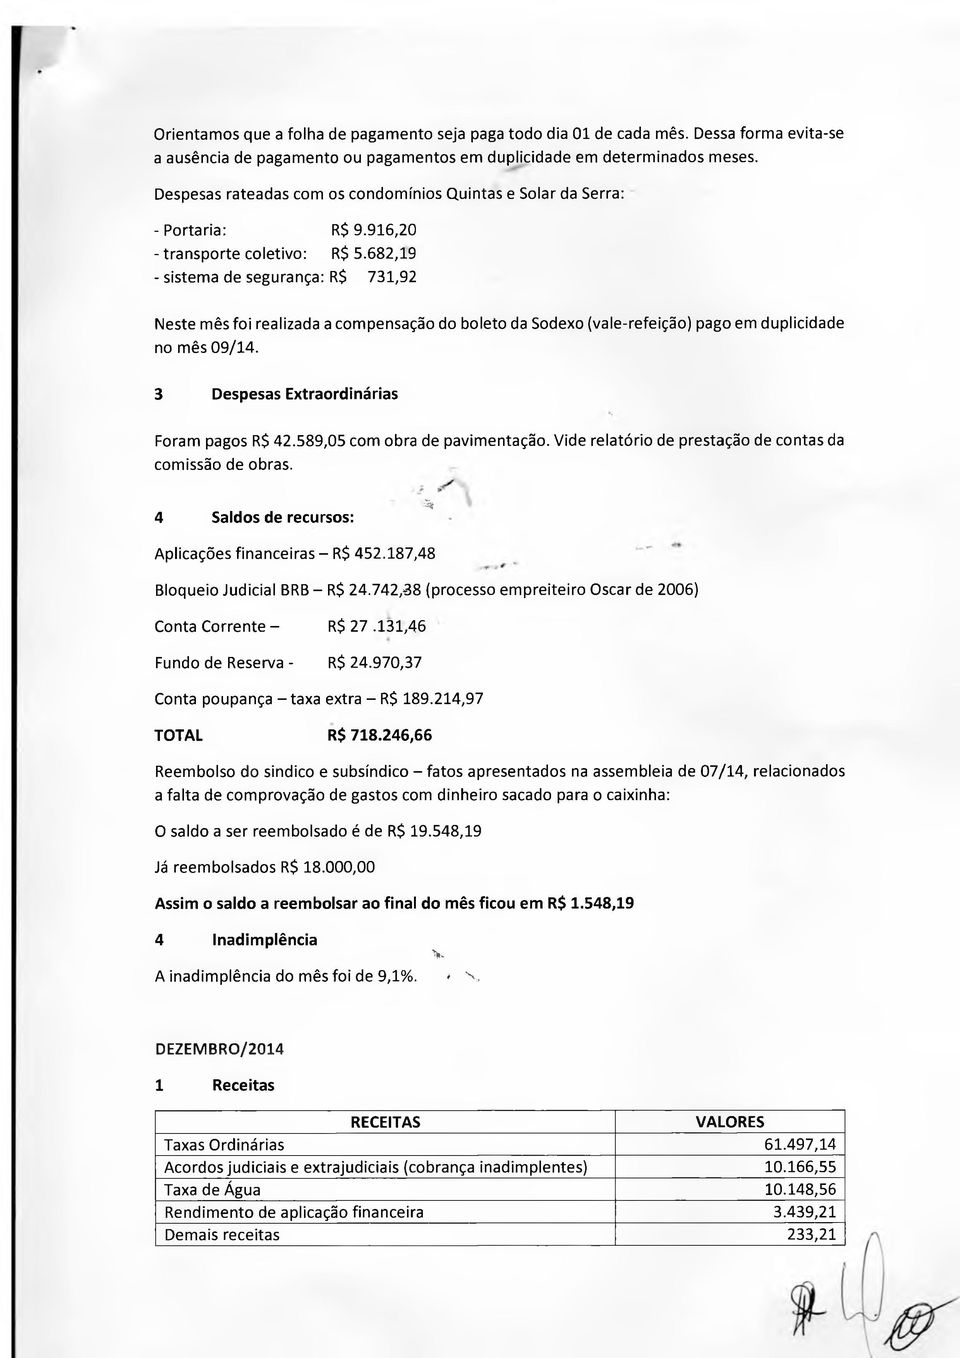 682,19 - sistema de segurança: R$ 731,92 Neste mês foi realizada a compensação do boleto da Sodexo (vale-refeição) pago em duplicidade no mês 09/14. 3 Despesas Extraordinárias Foram pagos R$ 42.